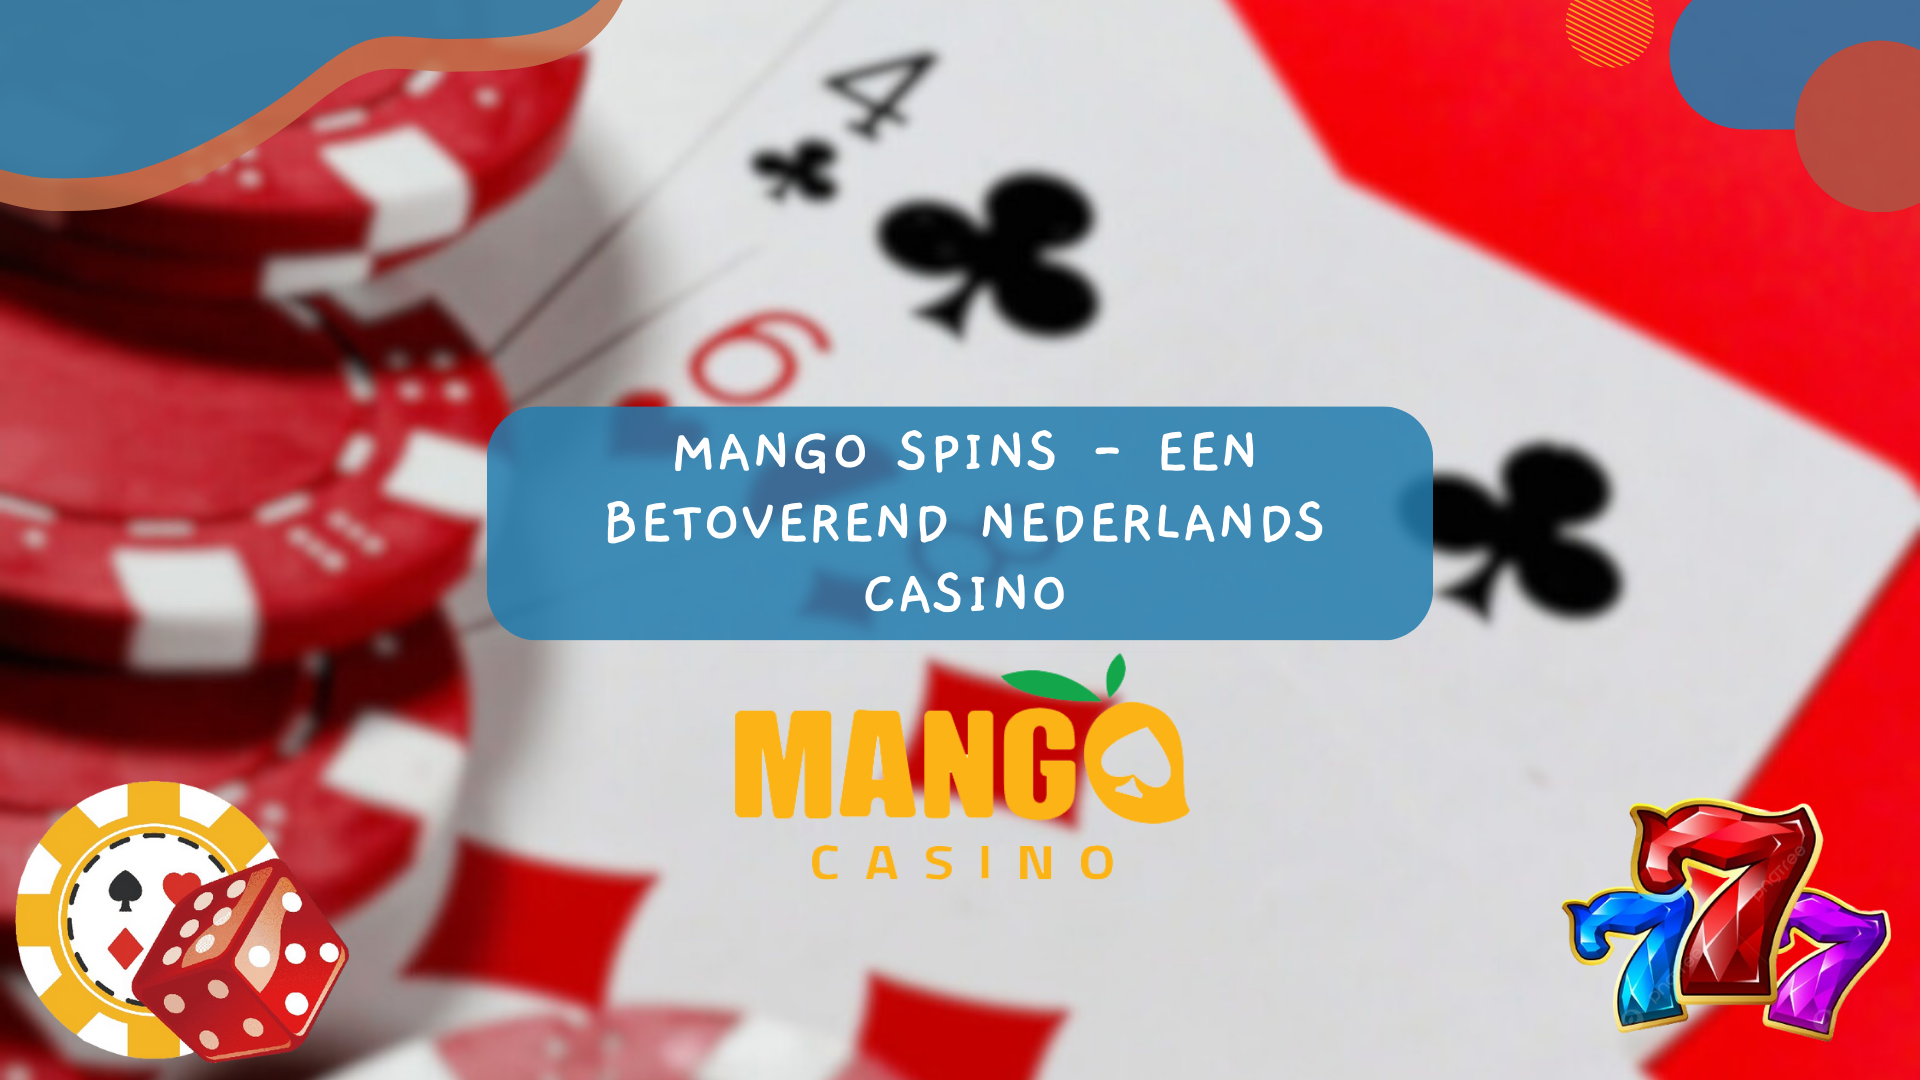 Mango Spins - Een betoverend Nederlands casino